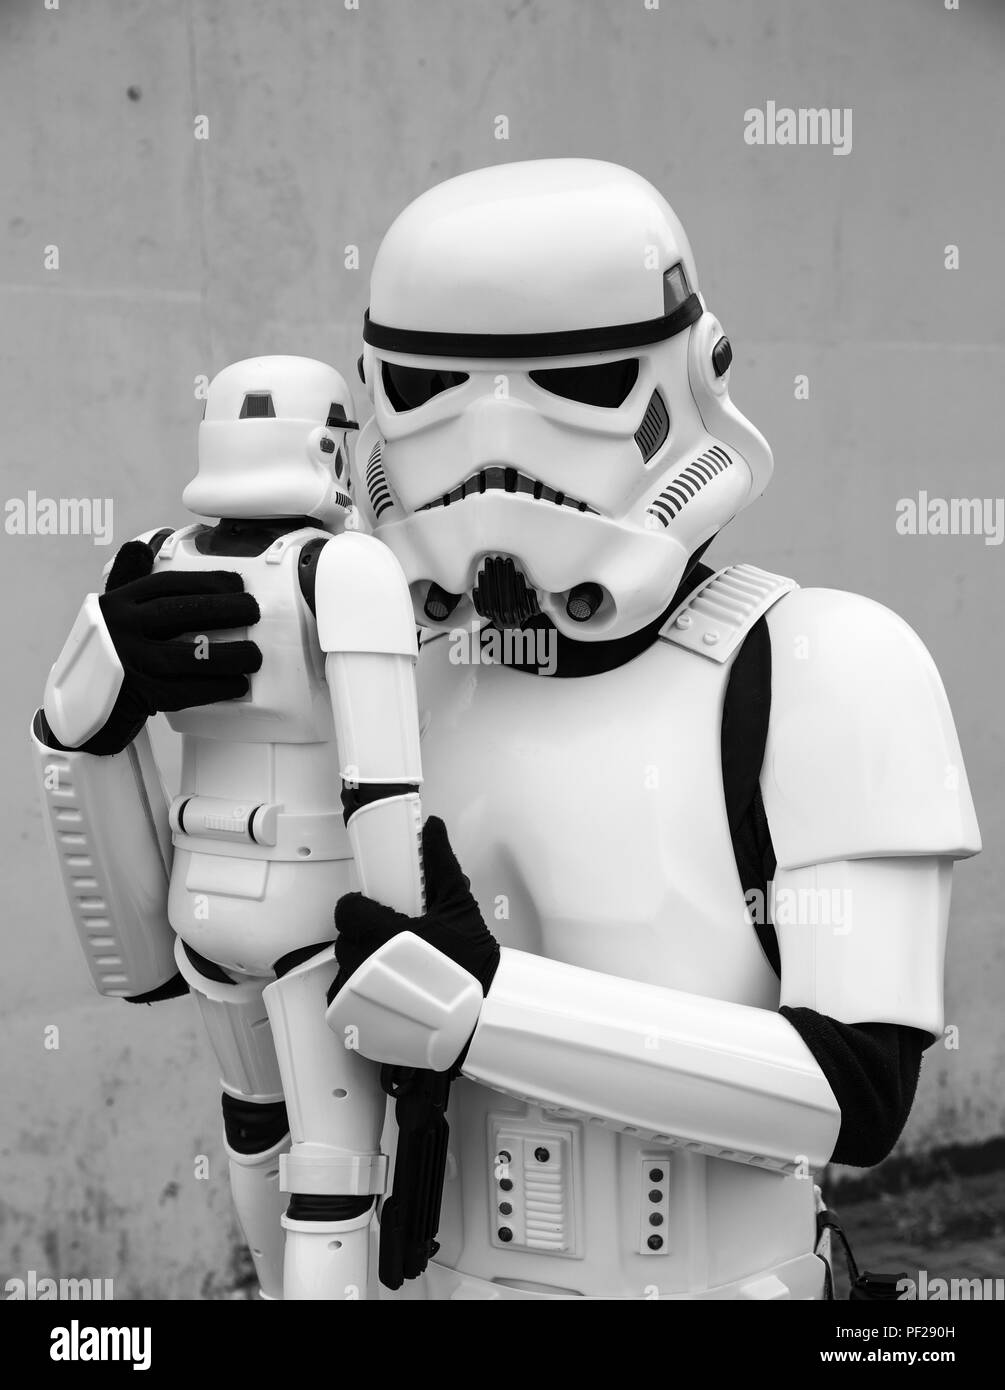 Un hombre vestido como un cosplayer Stormtrooper de la saga de Star Wars, sosteniendo un Stormtrooper herméticamente en un juguete divertido, padre e hijo, imagen de estilo de vida. Foto de stock